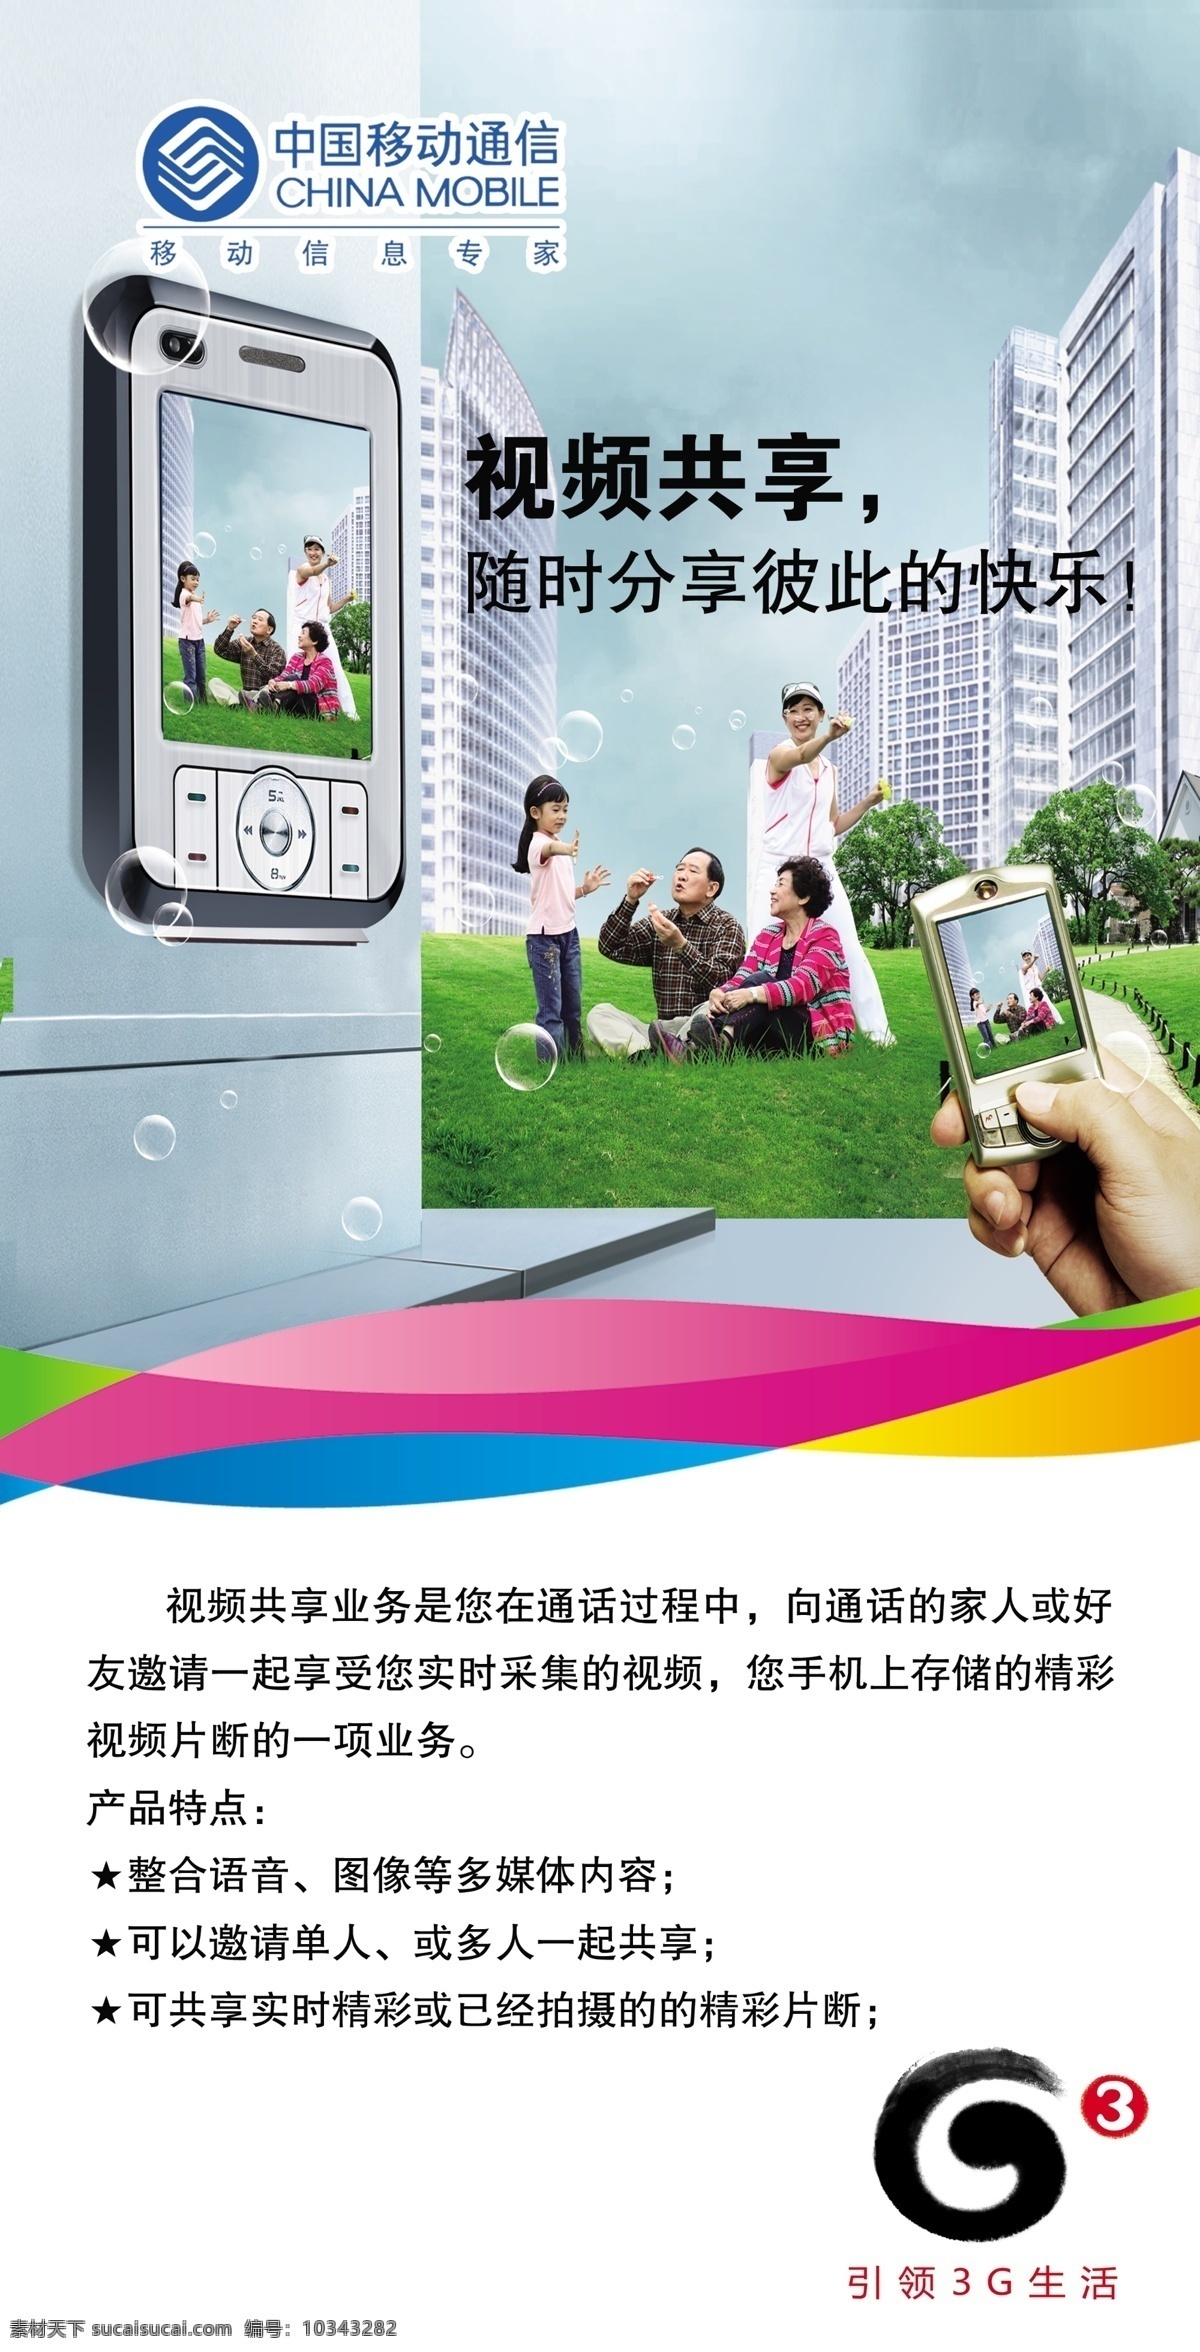 3g g3 草地 共享 广告设计模板 家人 绿地 中国移动 视频 中国 移动 手机 小孩 住房 源文件库 其他海报设计